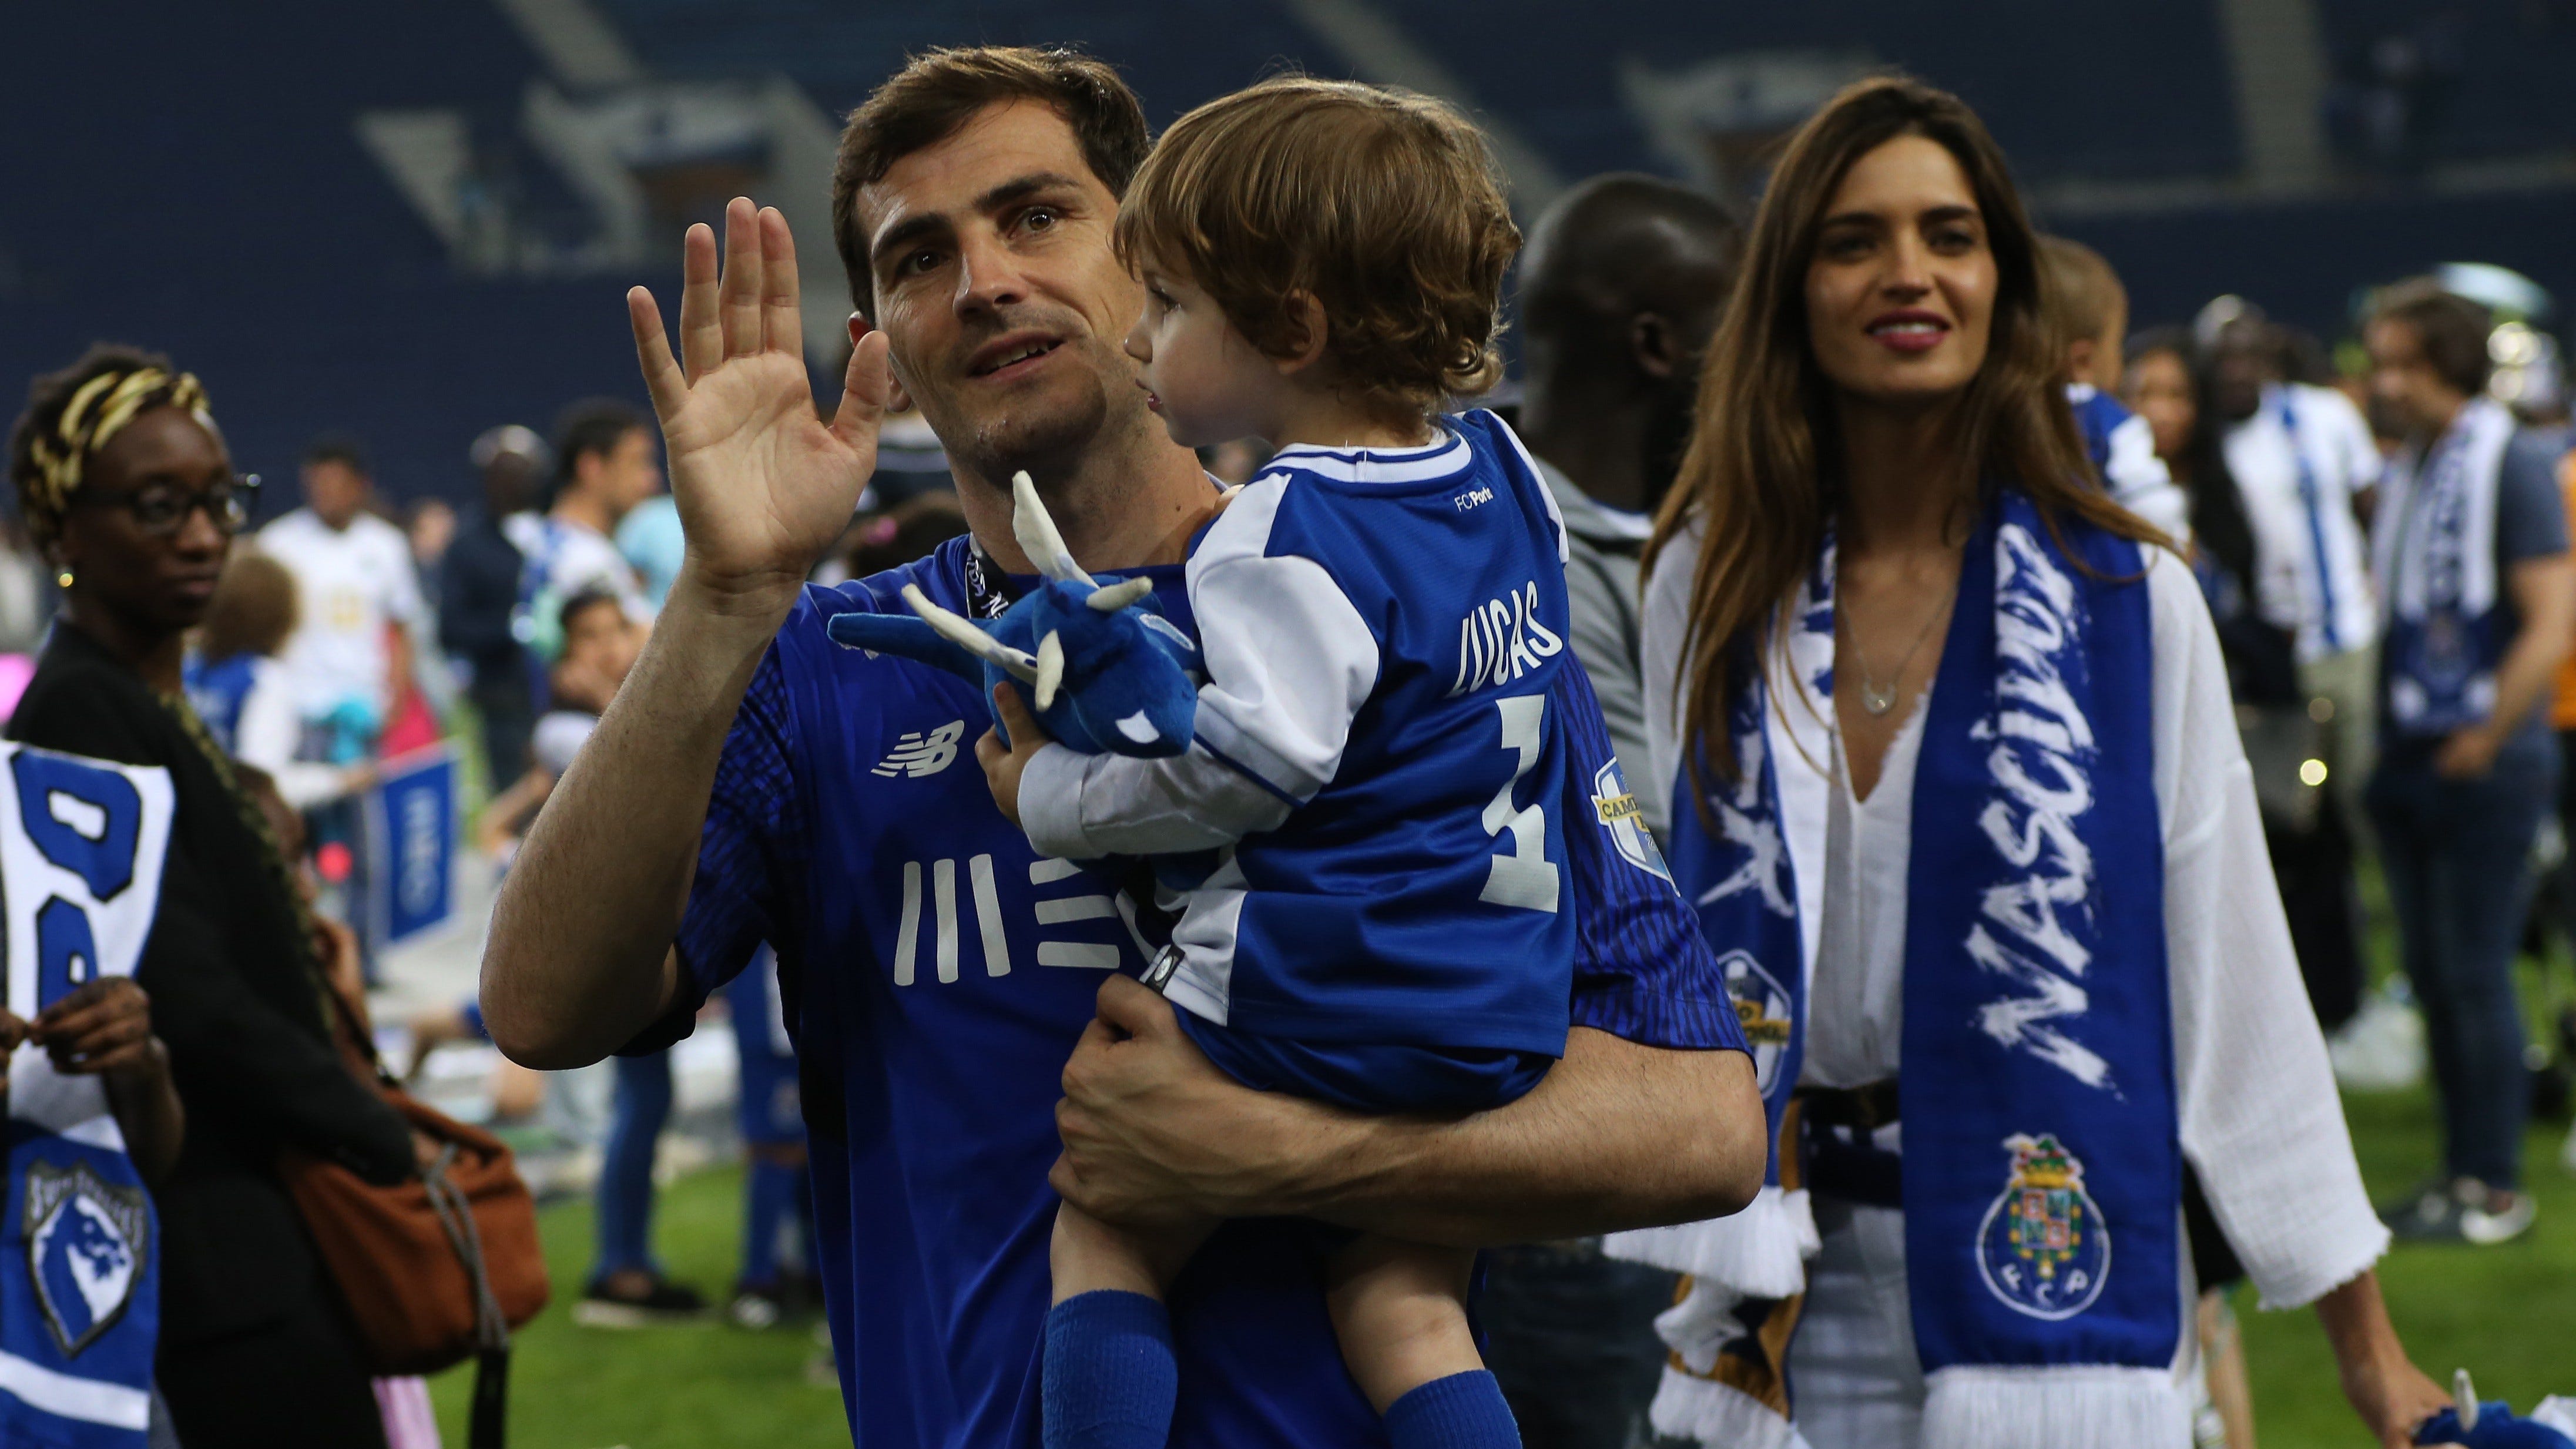 Casillas, campeón con el Oporto: las imágenes más emocionantes junto a Sara Carbonero hijos | Goal.com Espana